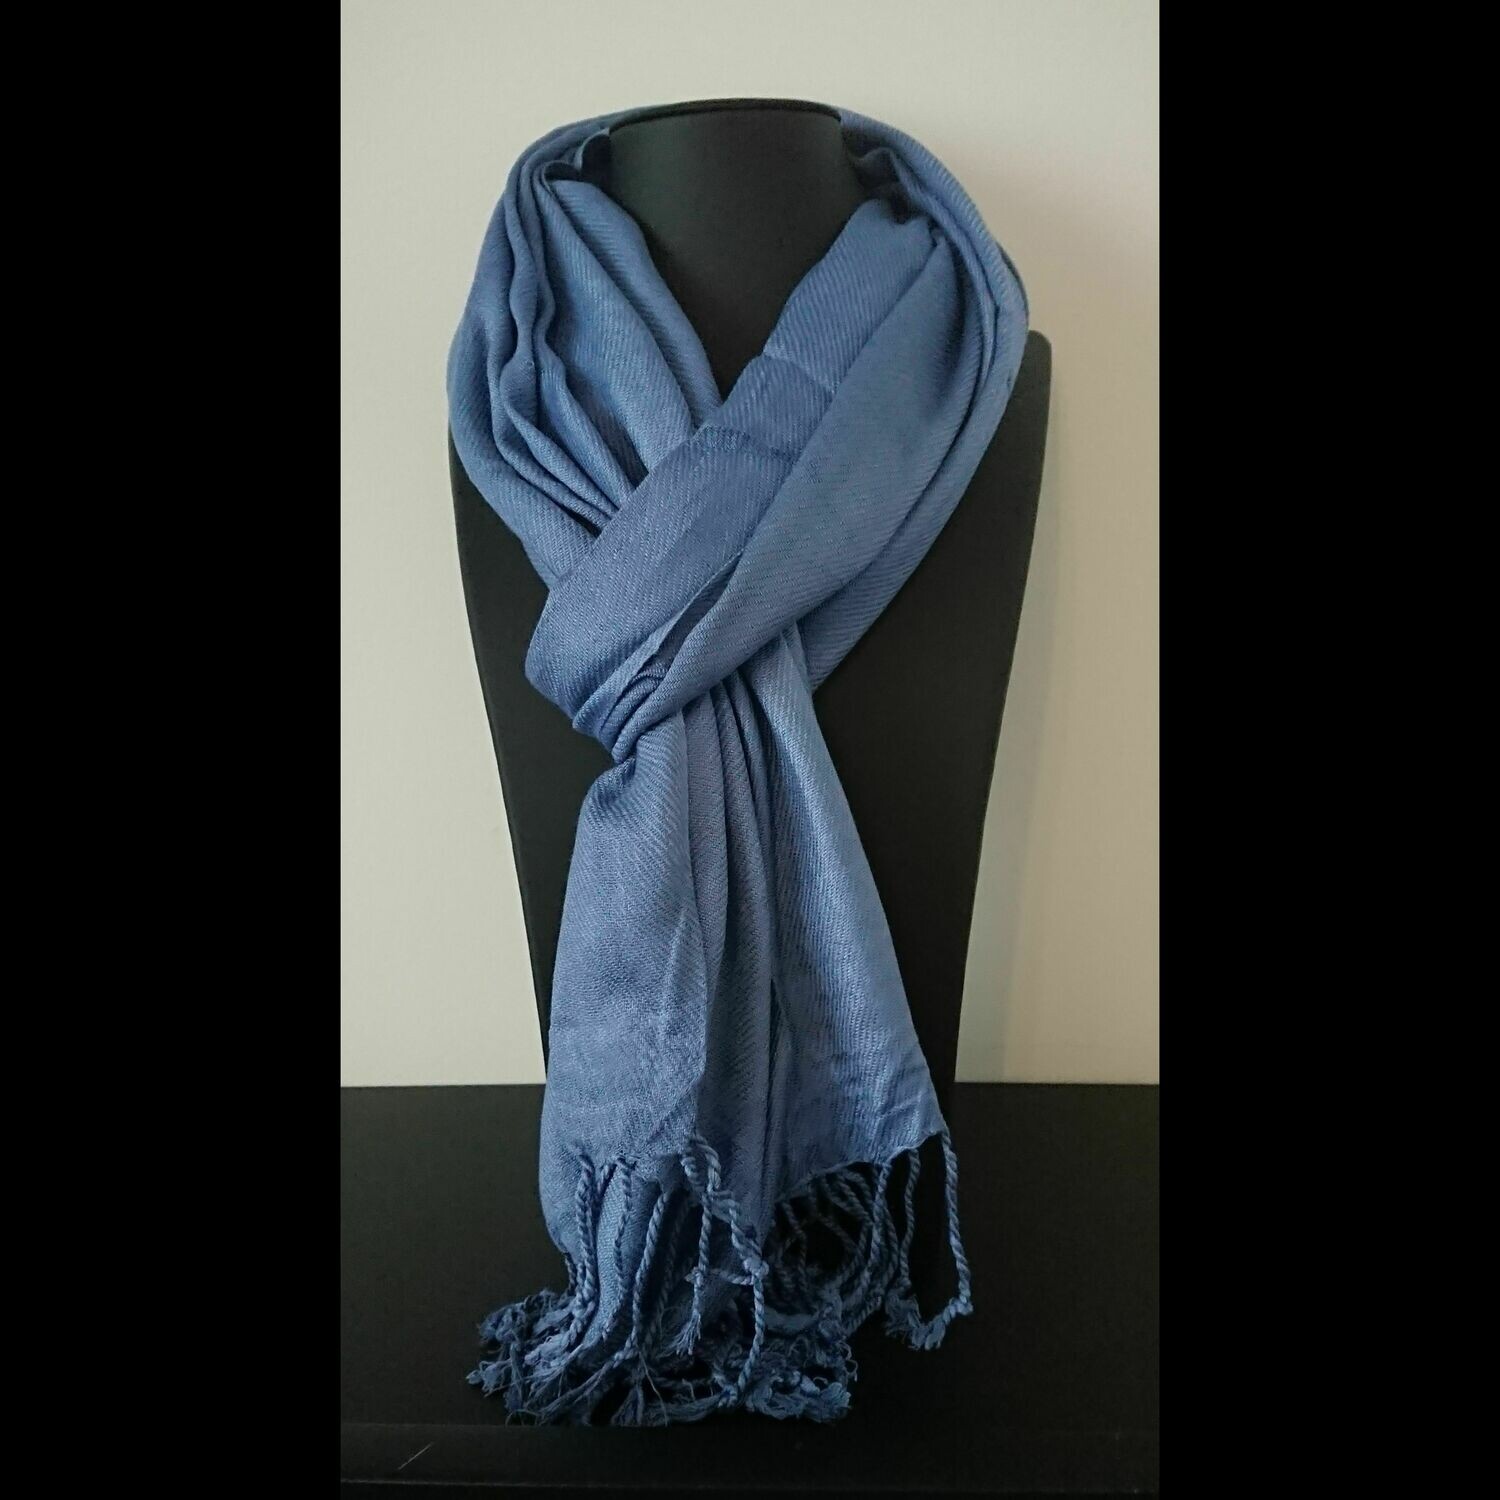 Gedrag Moderniseren schermutseling Chique effen grijs / blauwe sjaal